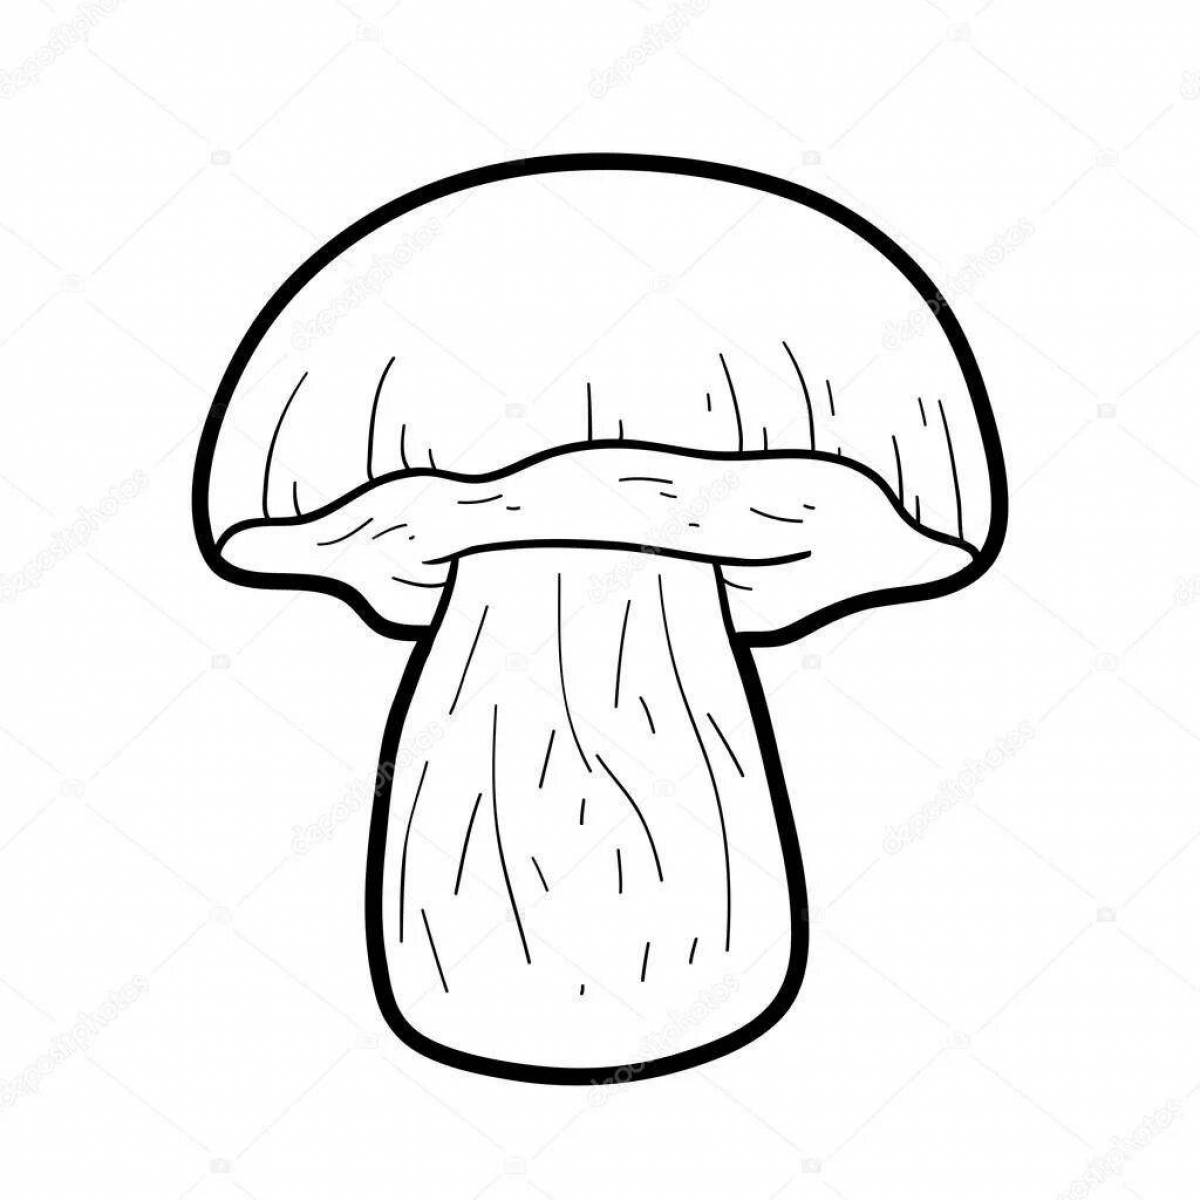 Fabulous porcini mushrooms coloring book for kids